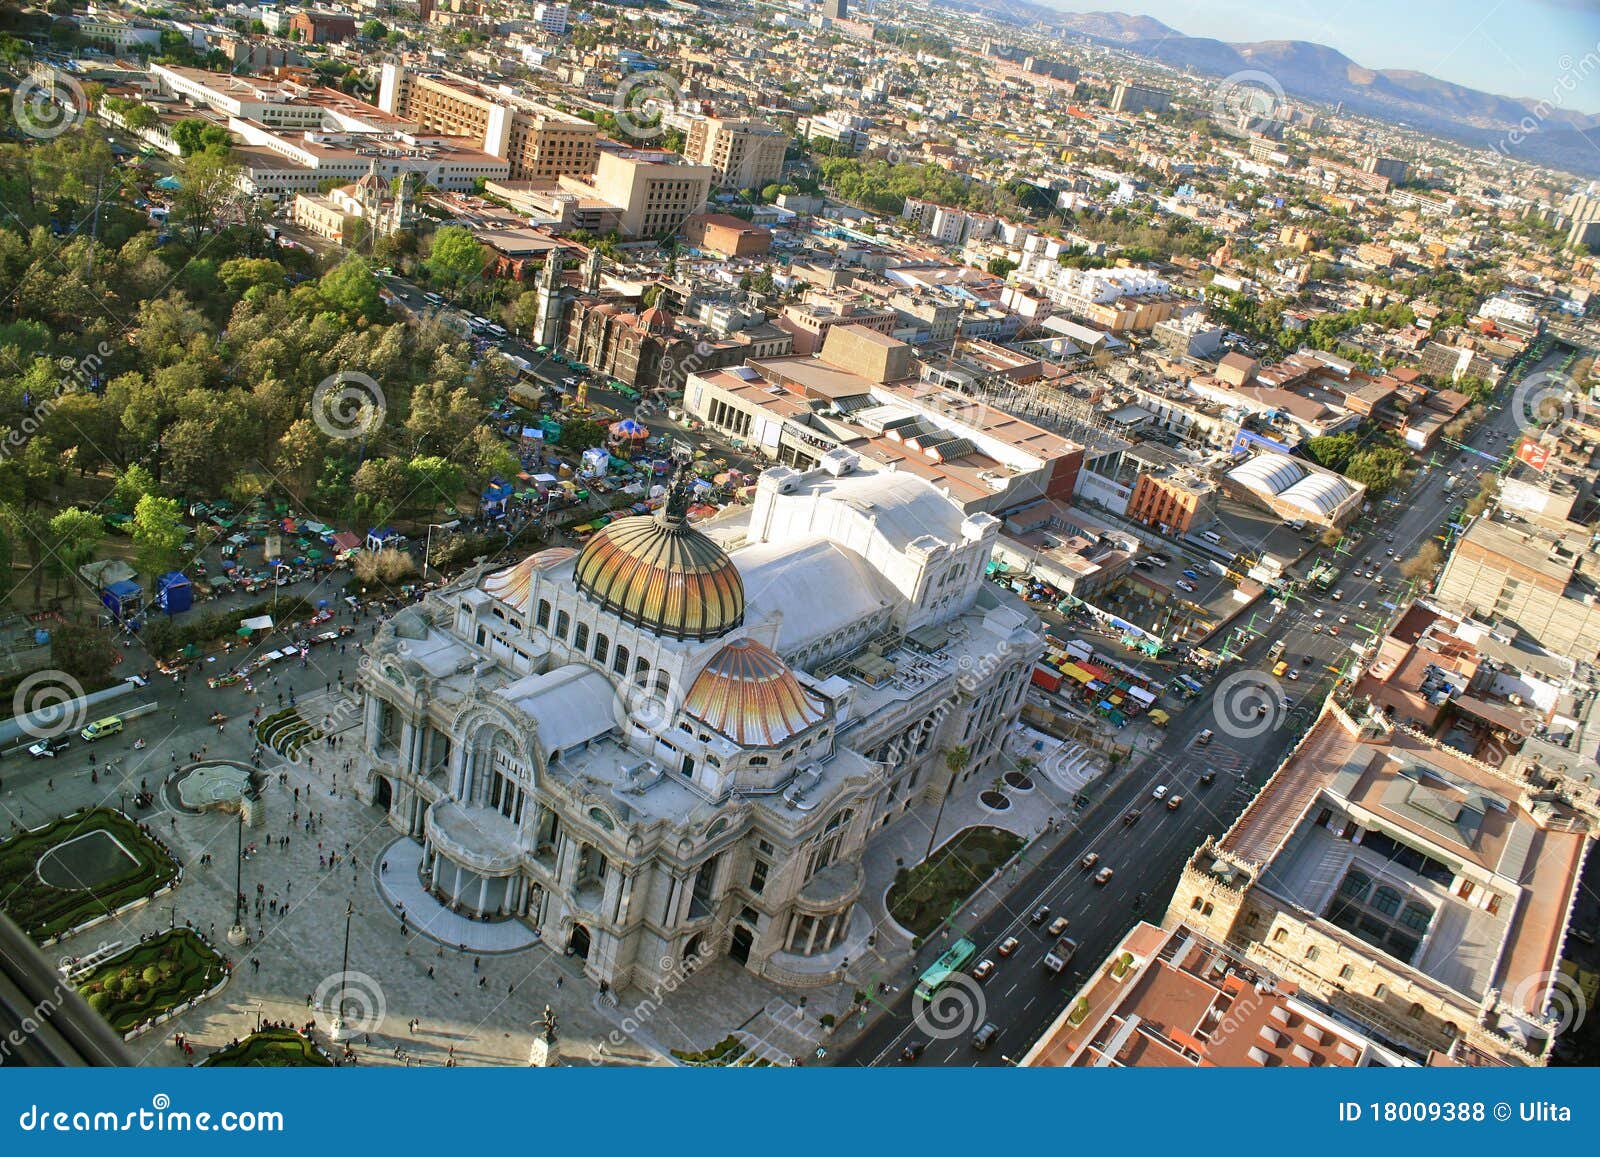 birdÃÂ´s eye view of bellas artes, mexico city